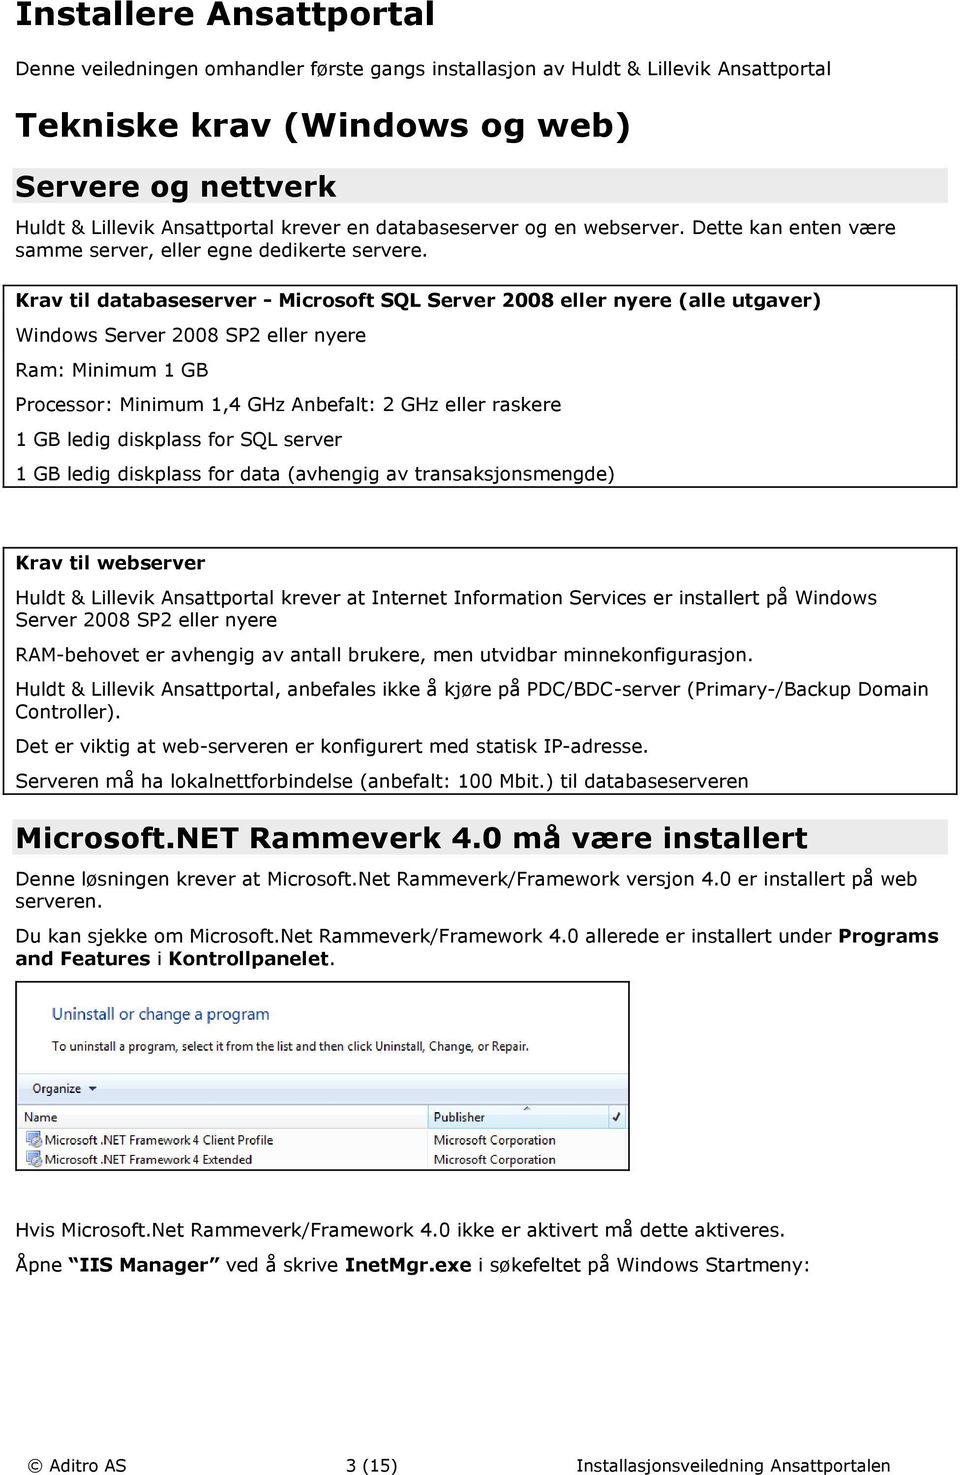 Krav til databaseserver - Microsoft SQL Server 2008 eller nyere (alle utgaver) Windows Server 2008 SP2 eller nyere Ram: Minimum 1 GB Processor: Minimum 1,4 GHz Anbefalt: 2 GHz eller raskere 1 GB